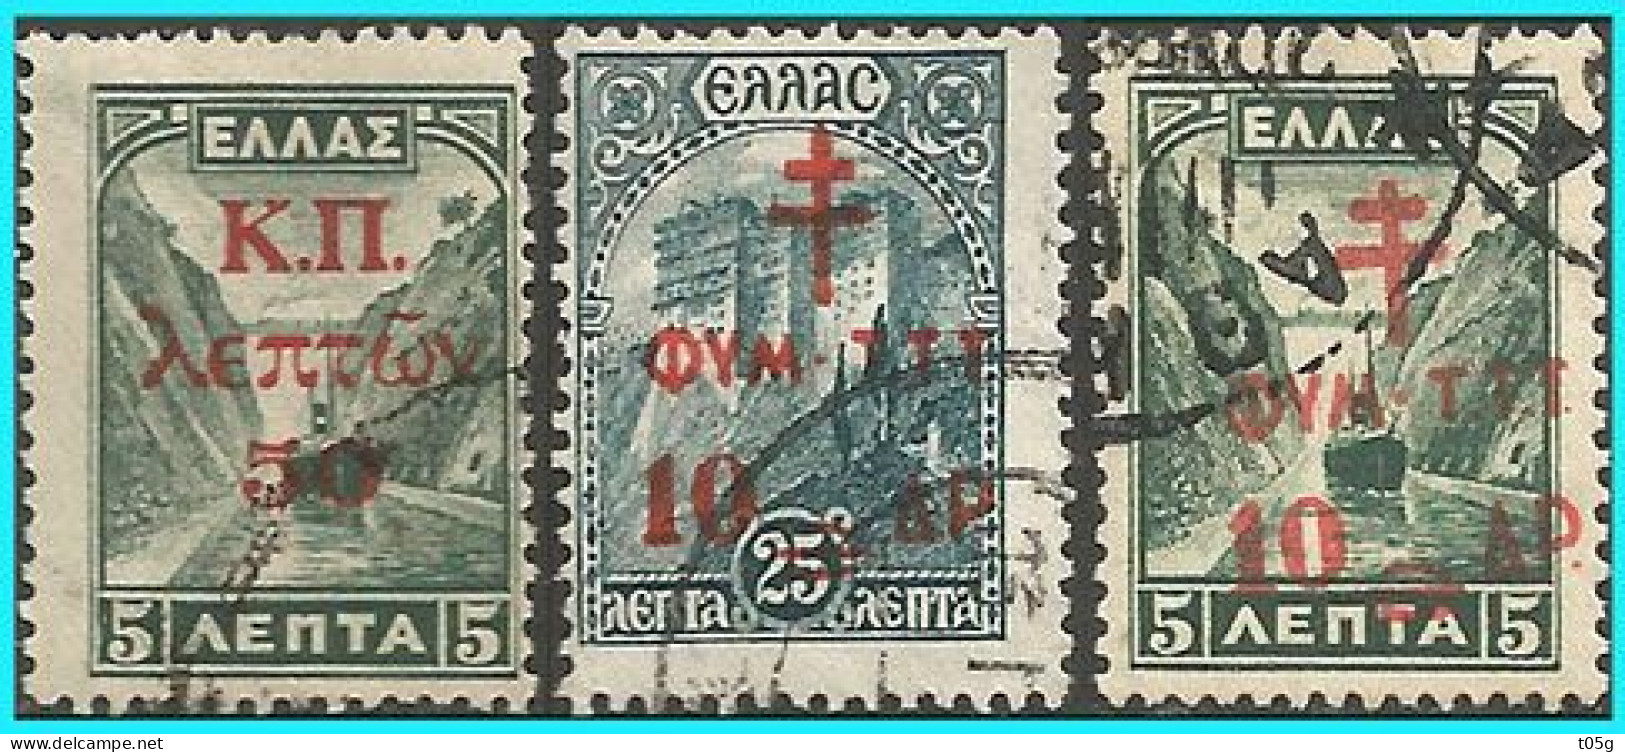 GREECE -GRECE- HELLAS 1941-42-43: Charity Stamps " Landscapes"  Overprind Compl Set Used - Beneficiencia (Sellos De)